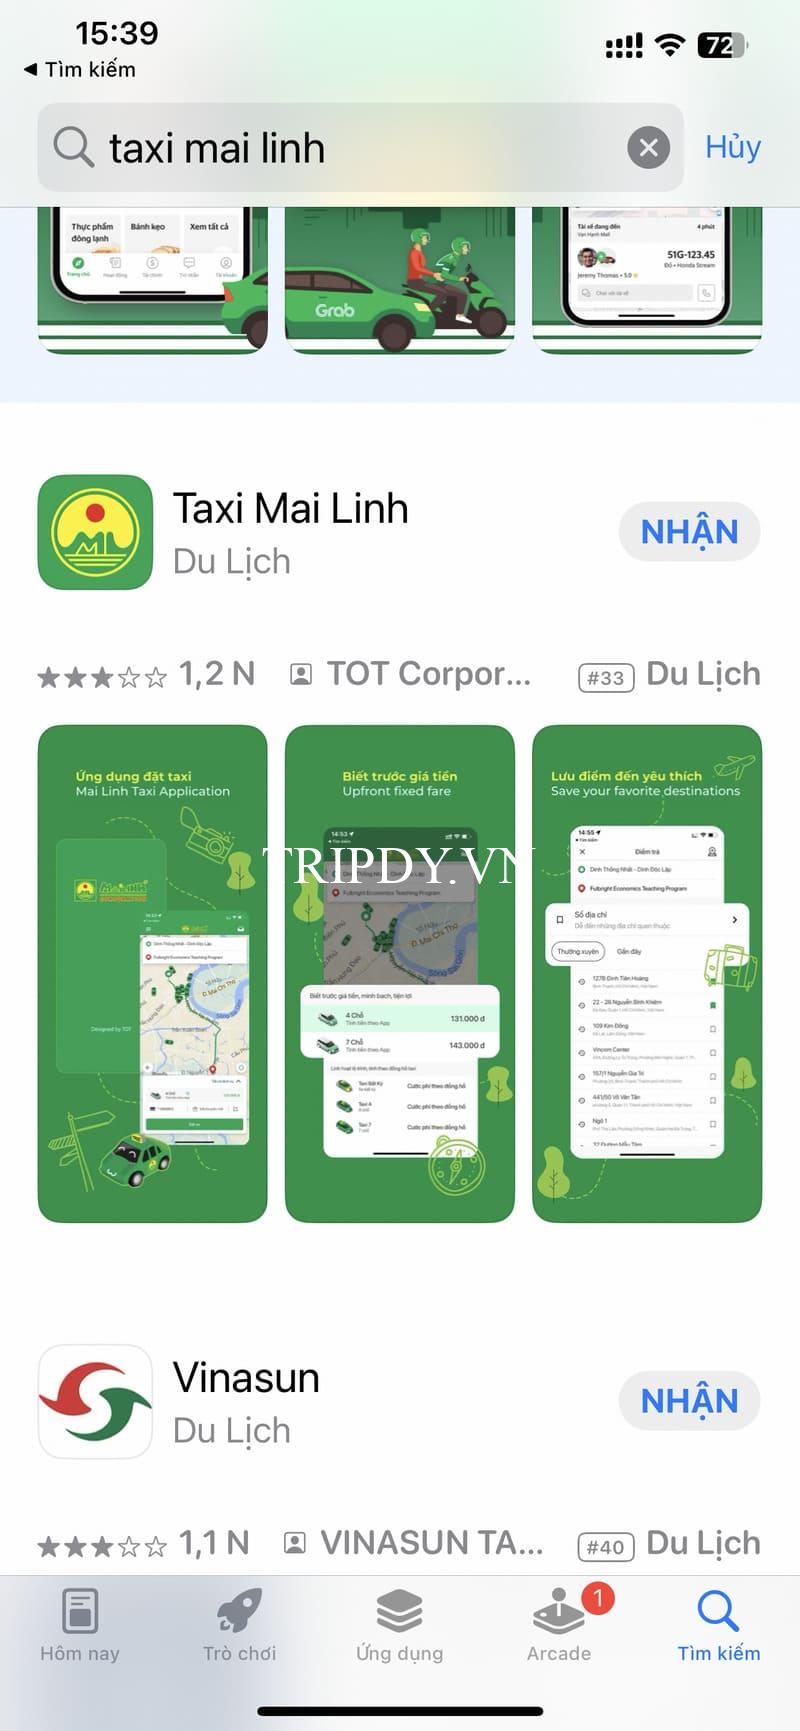 Taxi Mai Linh Nha Trang: Địa chỉ, số điện thoại tổng đài và giá cước